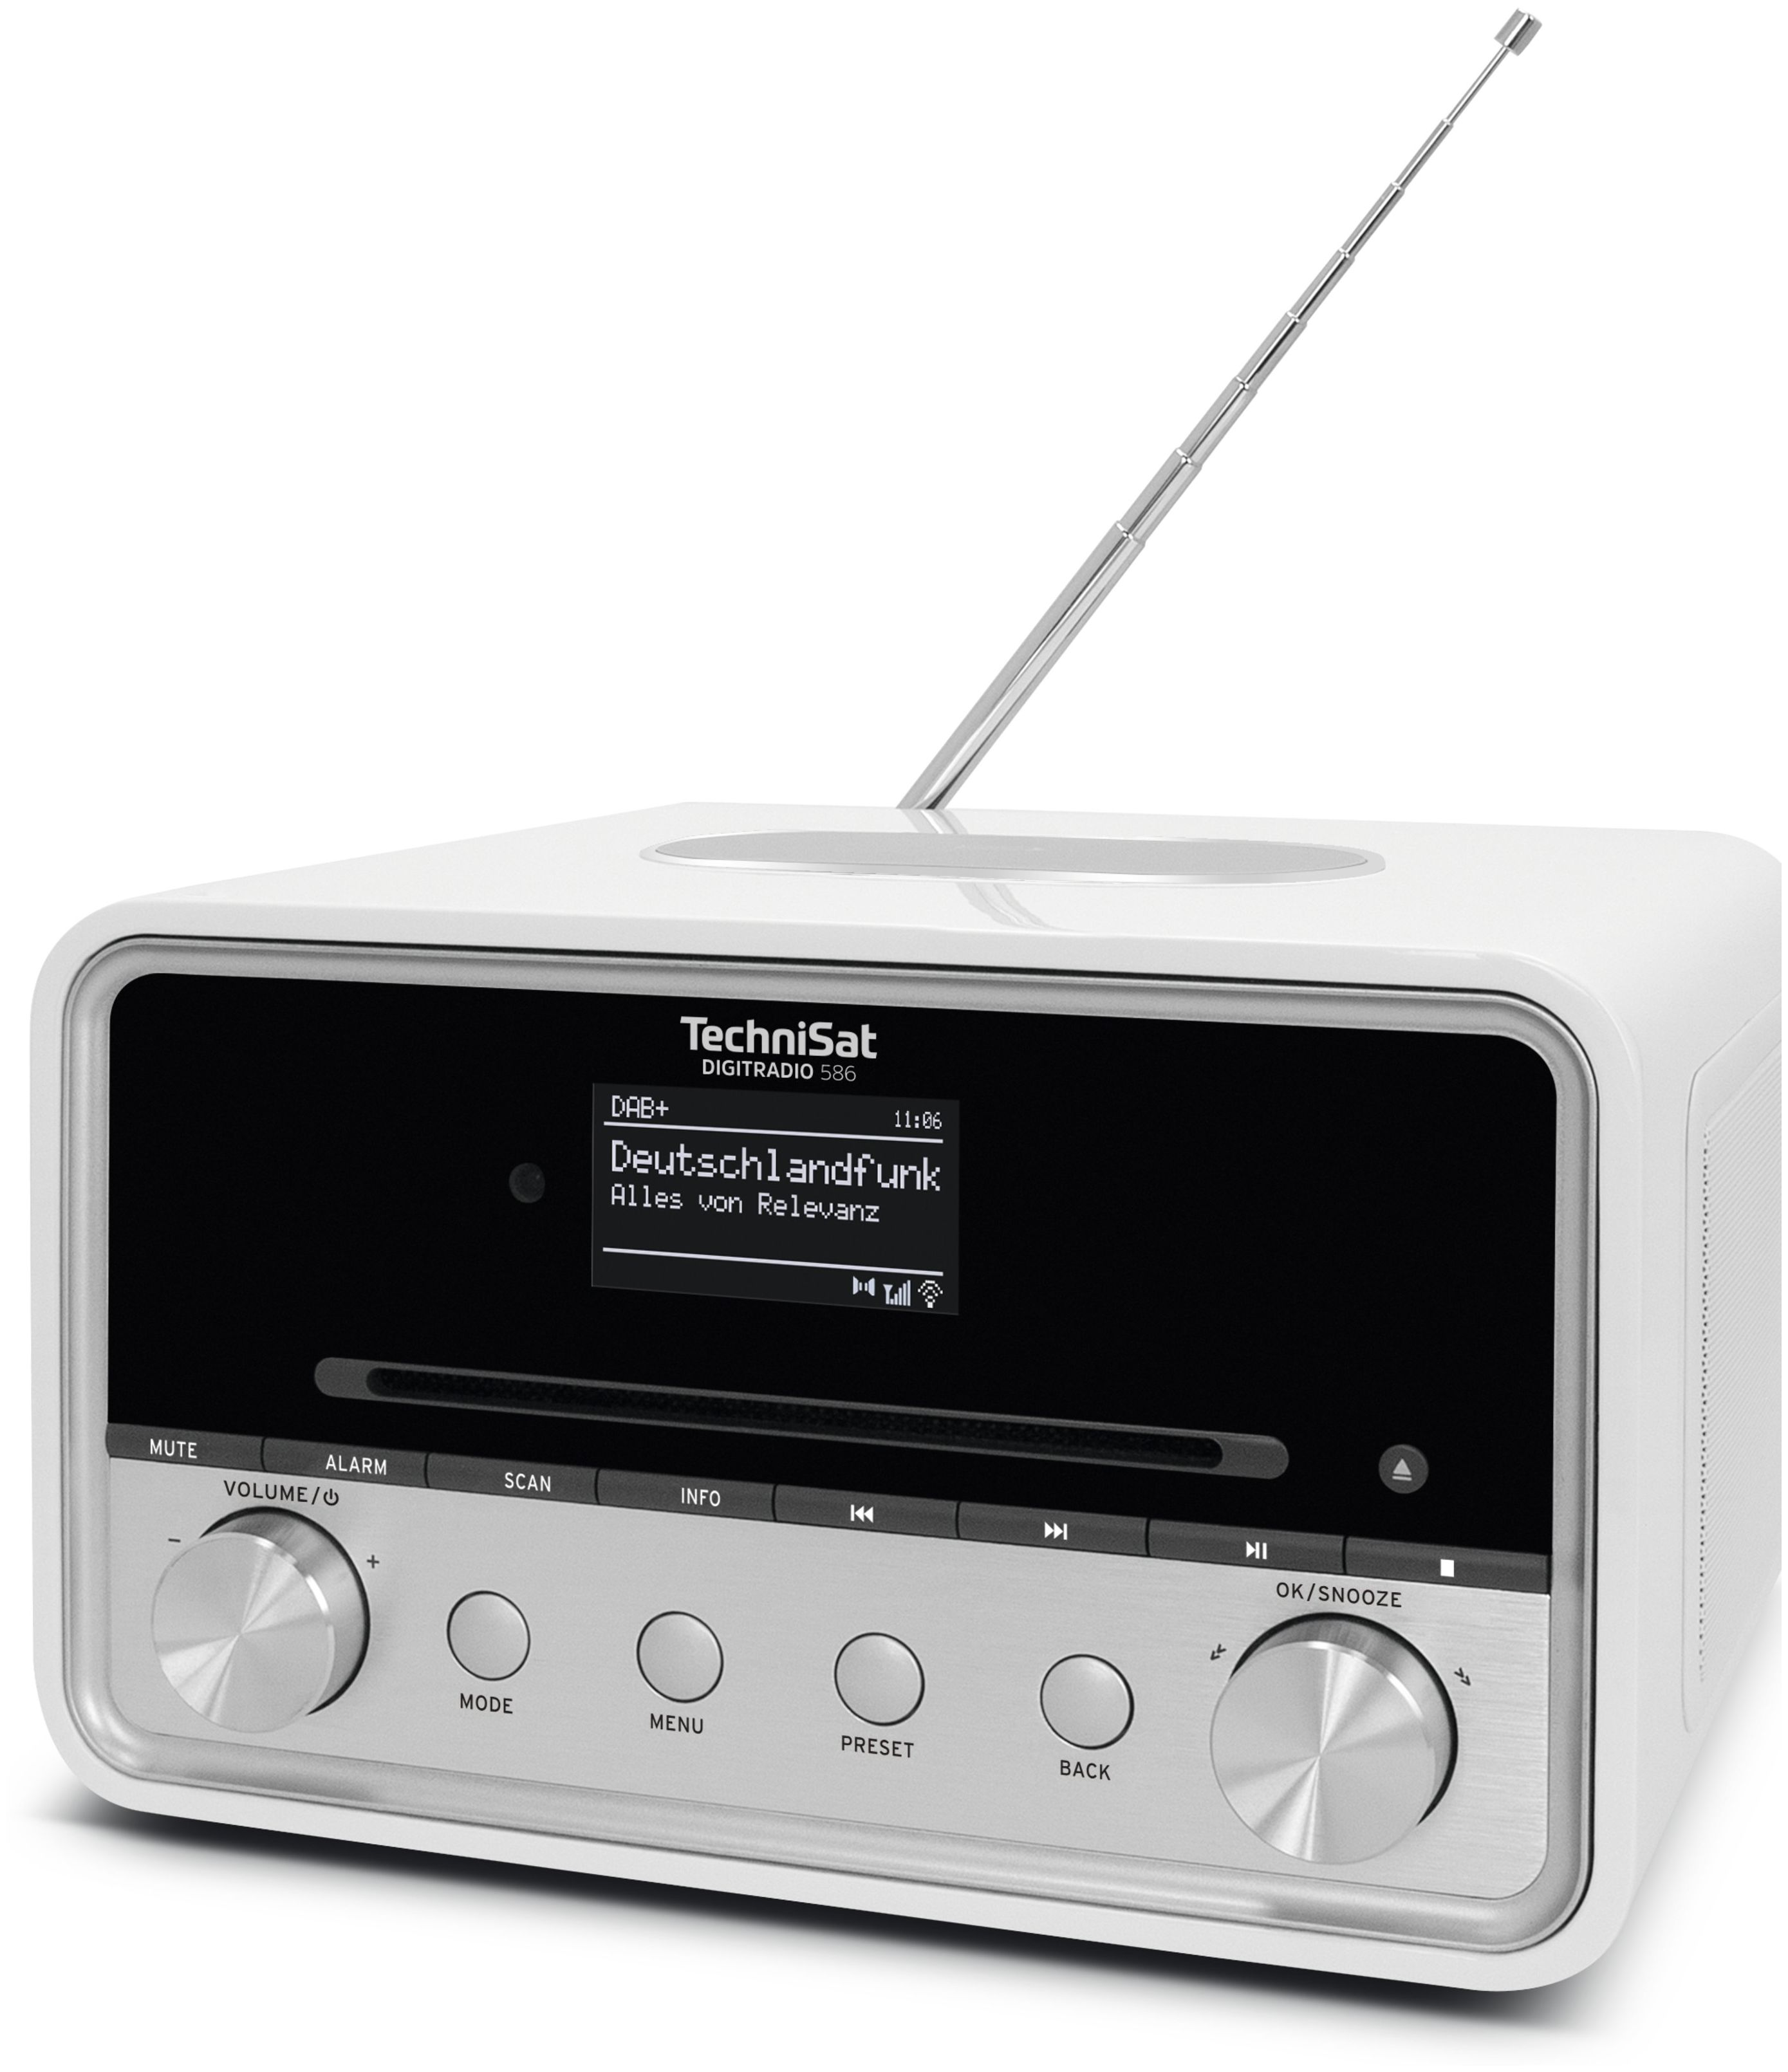 TechniSat Digitradio 586 bei Boomstore